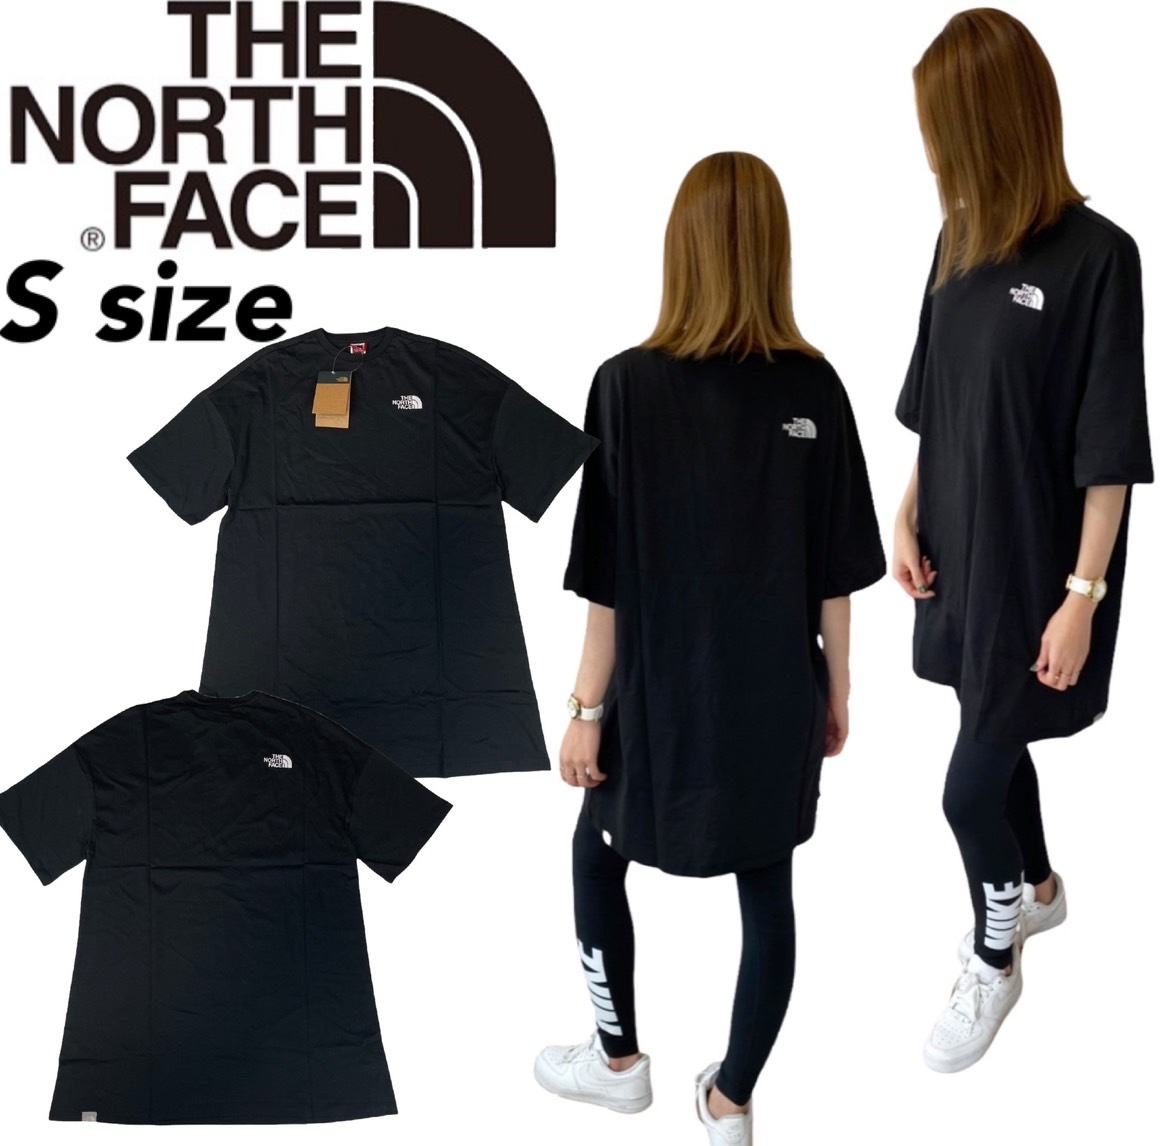 ザ ノースフェイス トップス Tシャツ NF0A55AP ワンピース ブラック Sサイズ レディースサイズ THE NORTH FACE WOMEN'S S/S T DRESS 新品